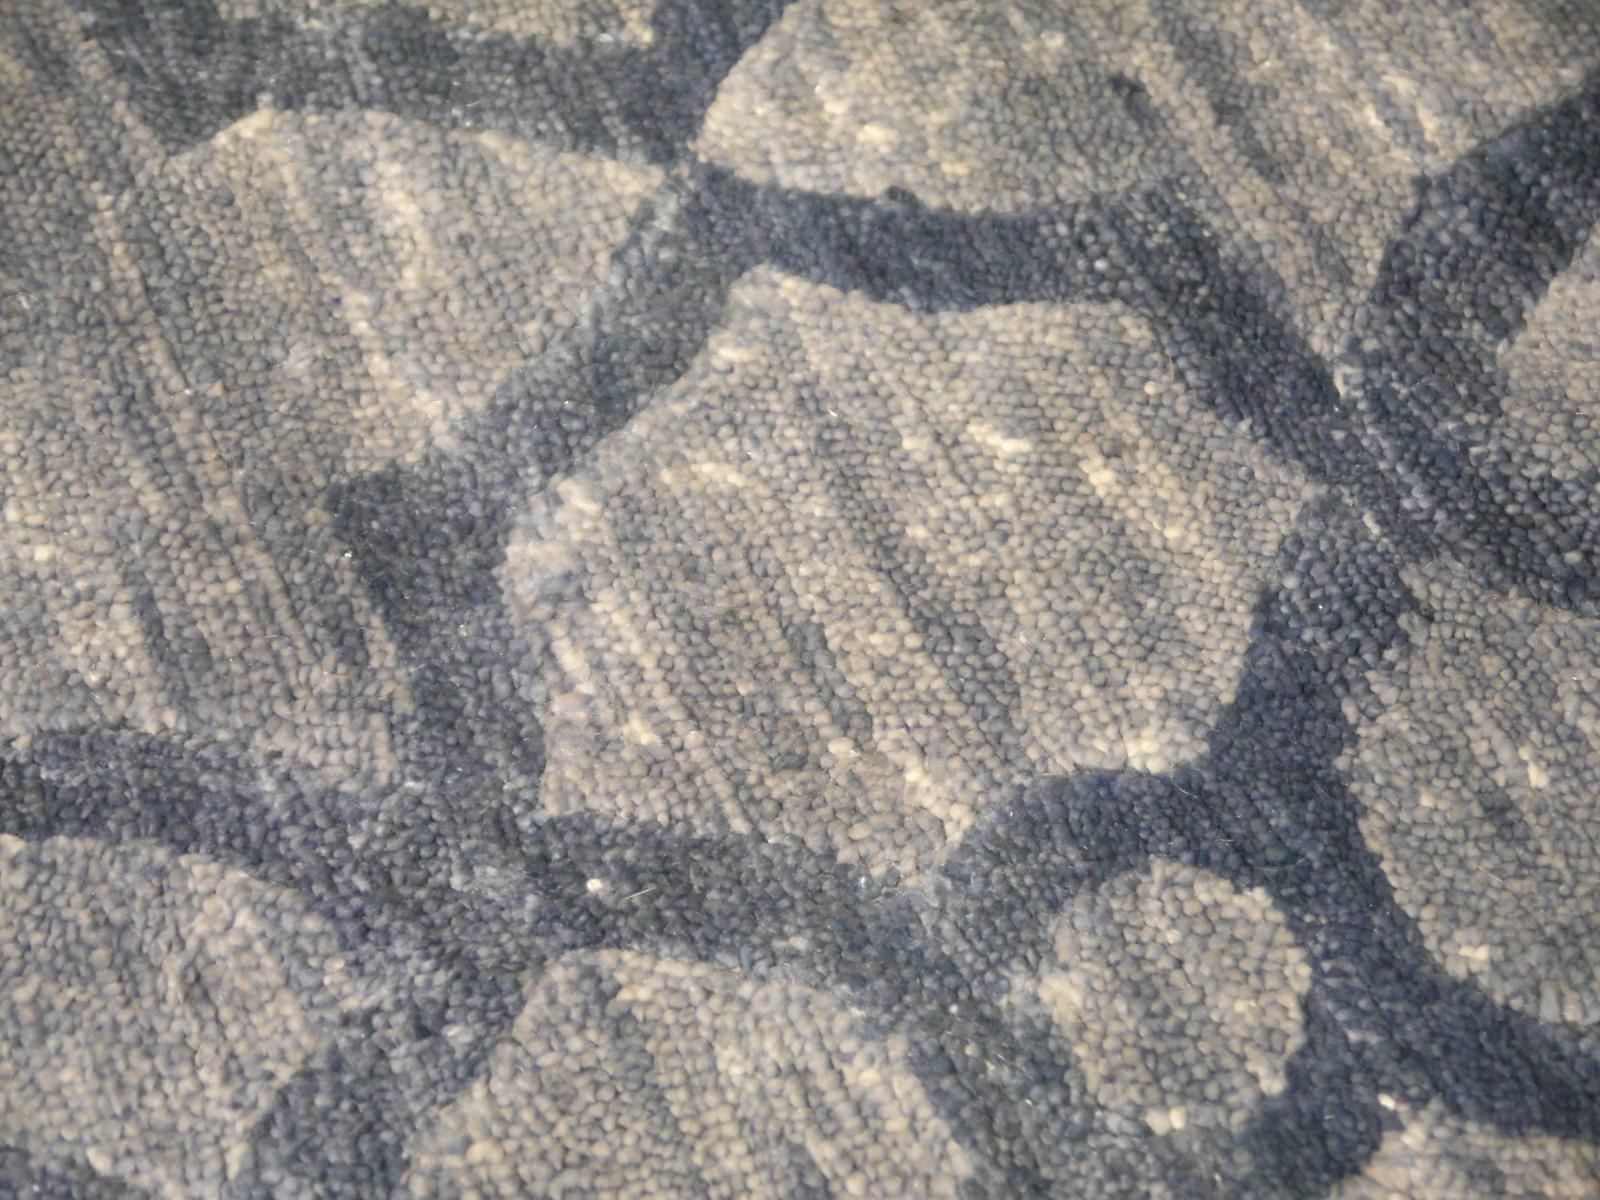 Designer-Teppich ca. 9 x 6 ft handgeknüpft blau
Exklusiver Designteppich, handgeknüpft in zwei Farben aus feinster Bambusseide.
Diskrete Eleganz durch edles Material.
Herstellungsmethode: handgeknüpft
Material: 100% Bambusseide, hergestellt nach dem